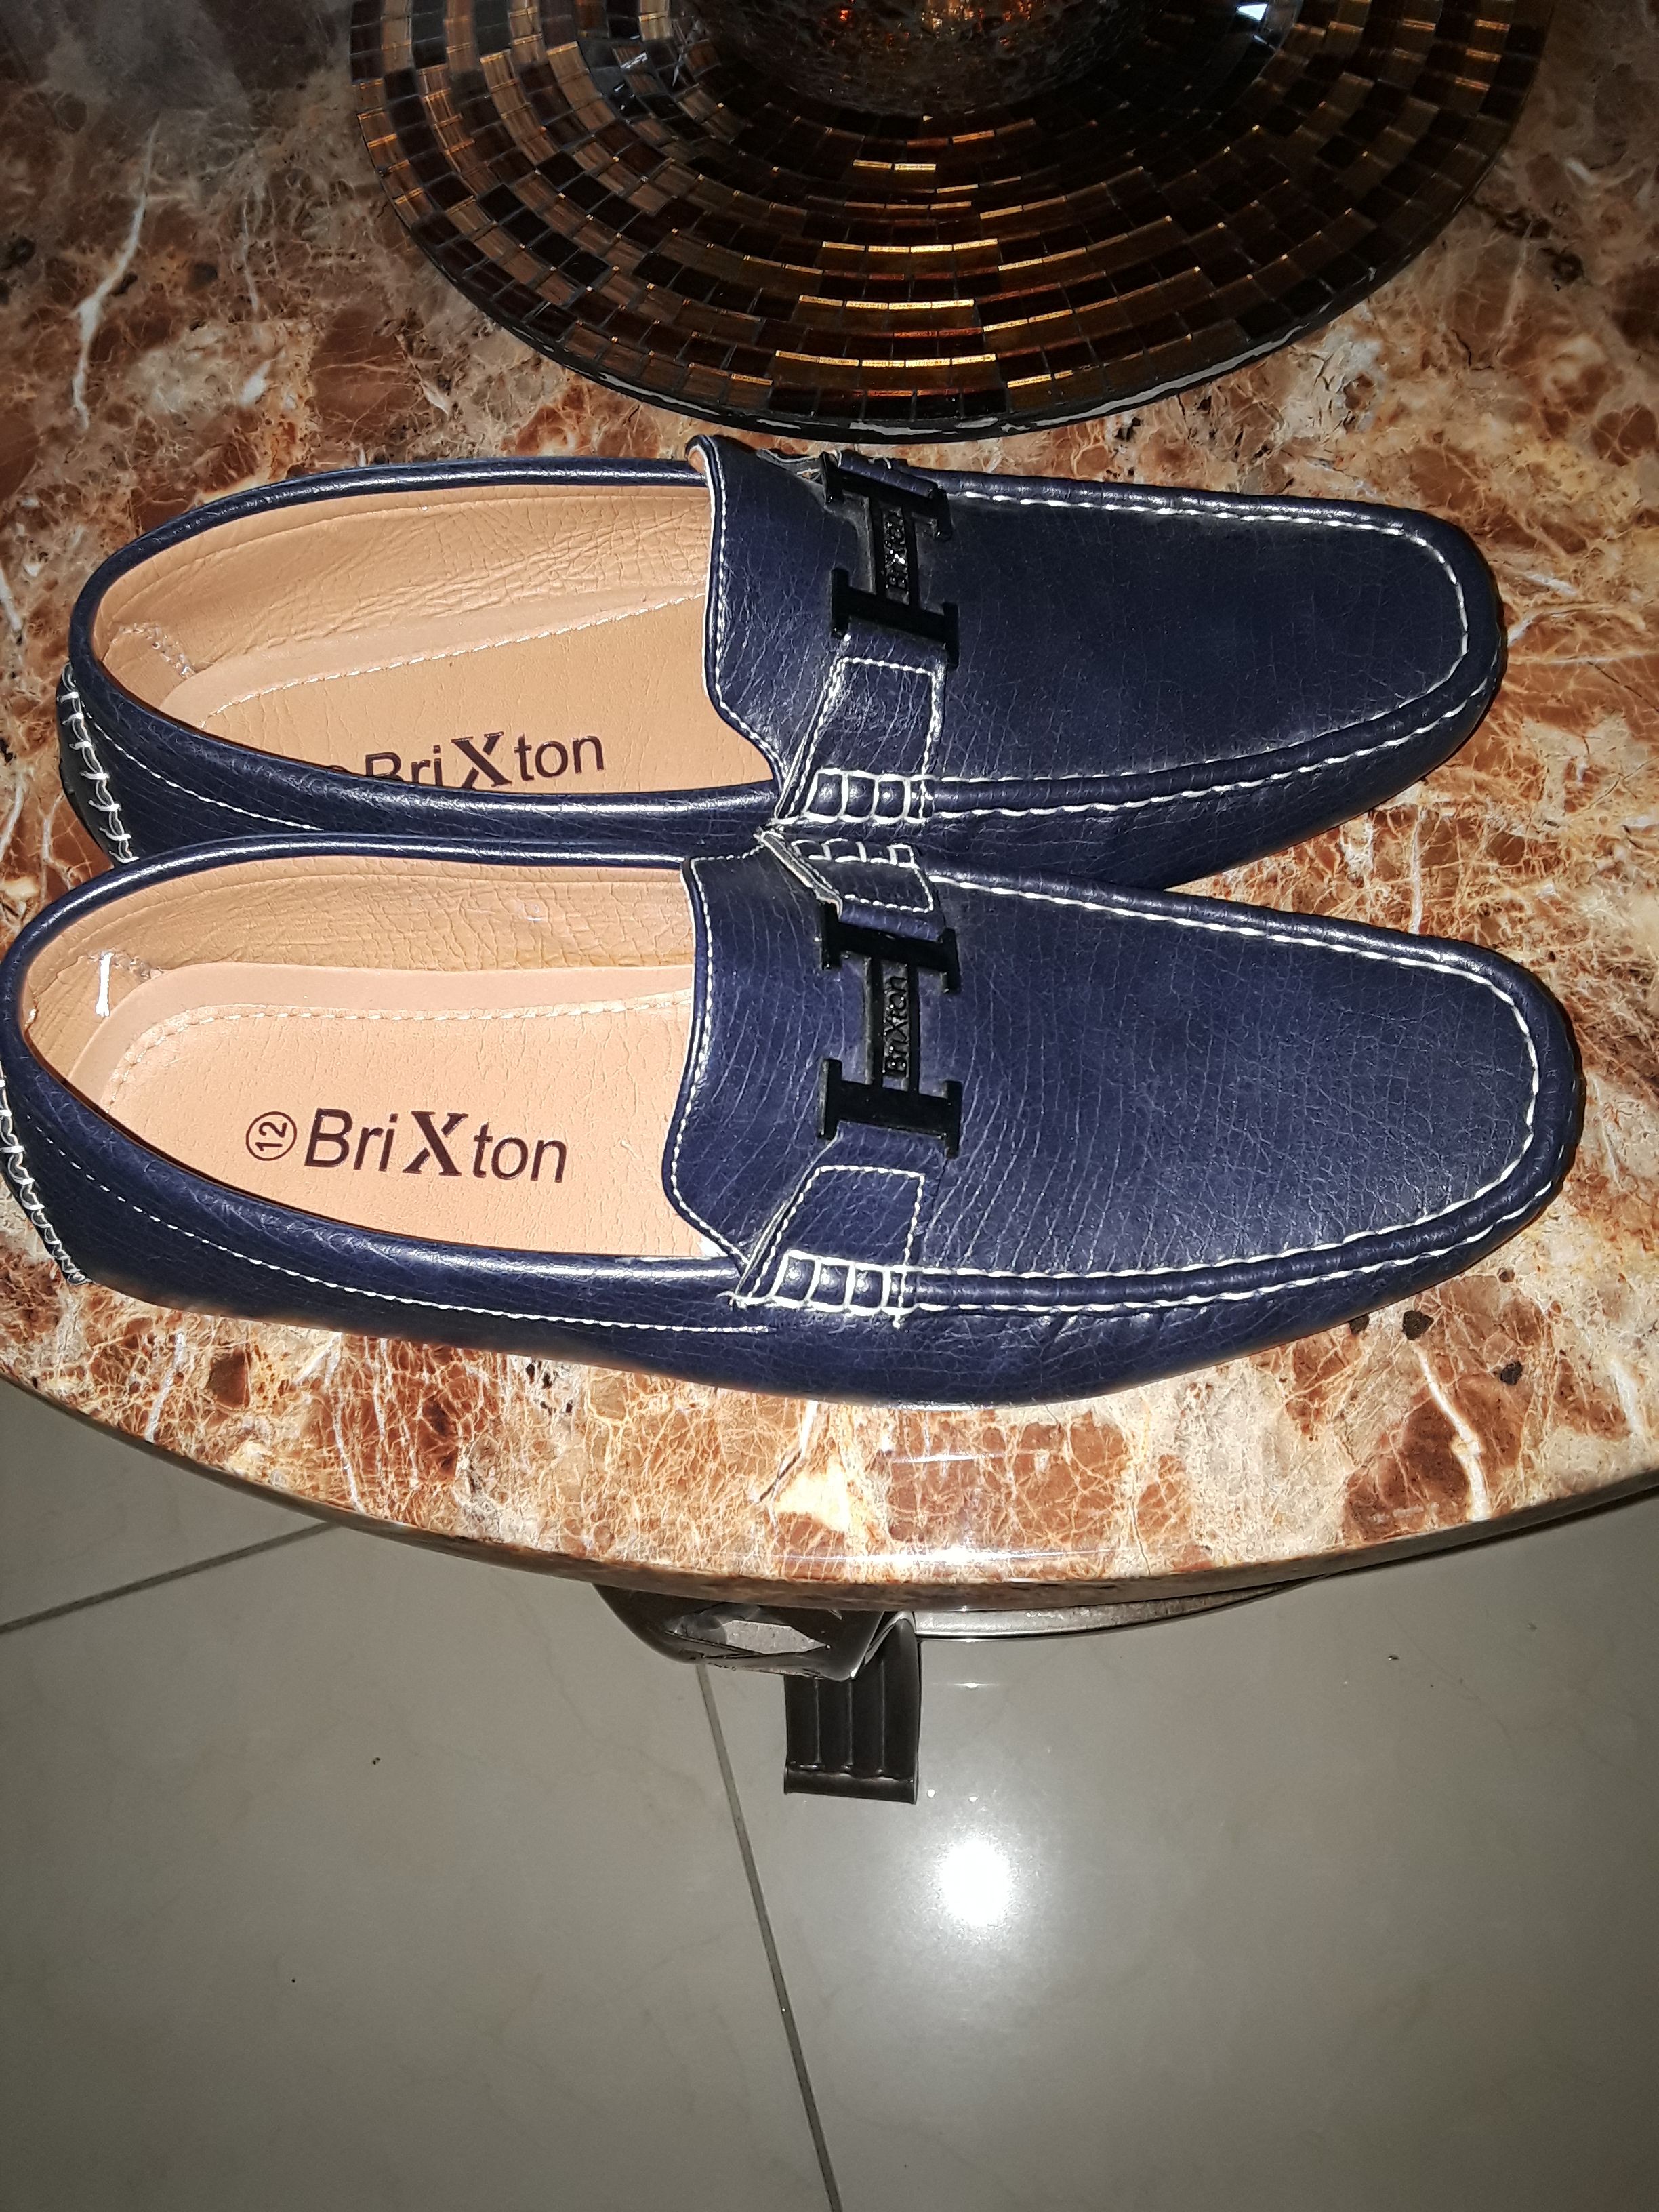 Brixton men's shoe size 12